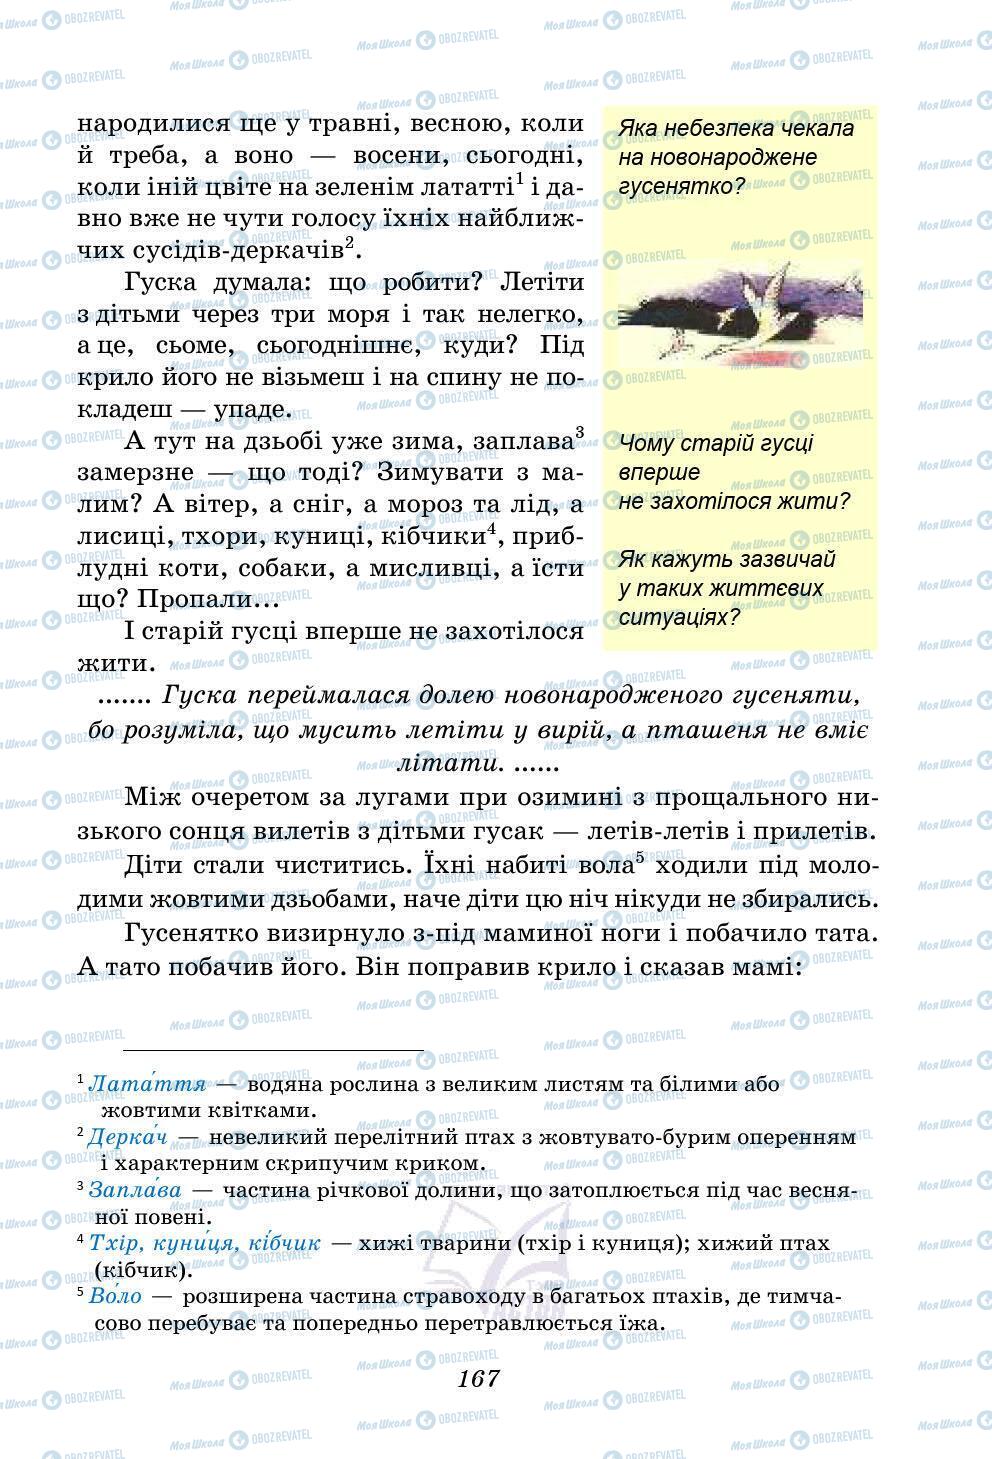 Учебники Укр лит 5 класс страница 167